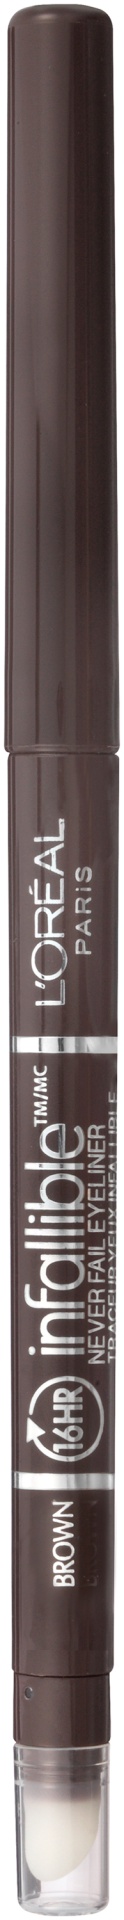 slide 3 of 6, L'Oréal Paris True Match Cool Soft Sable Super-Blendable Compact Makeup, 1 ct